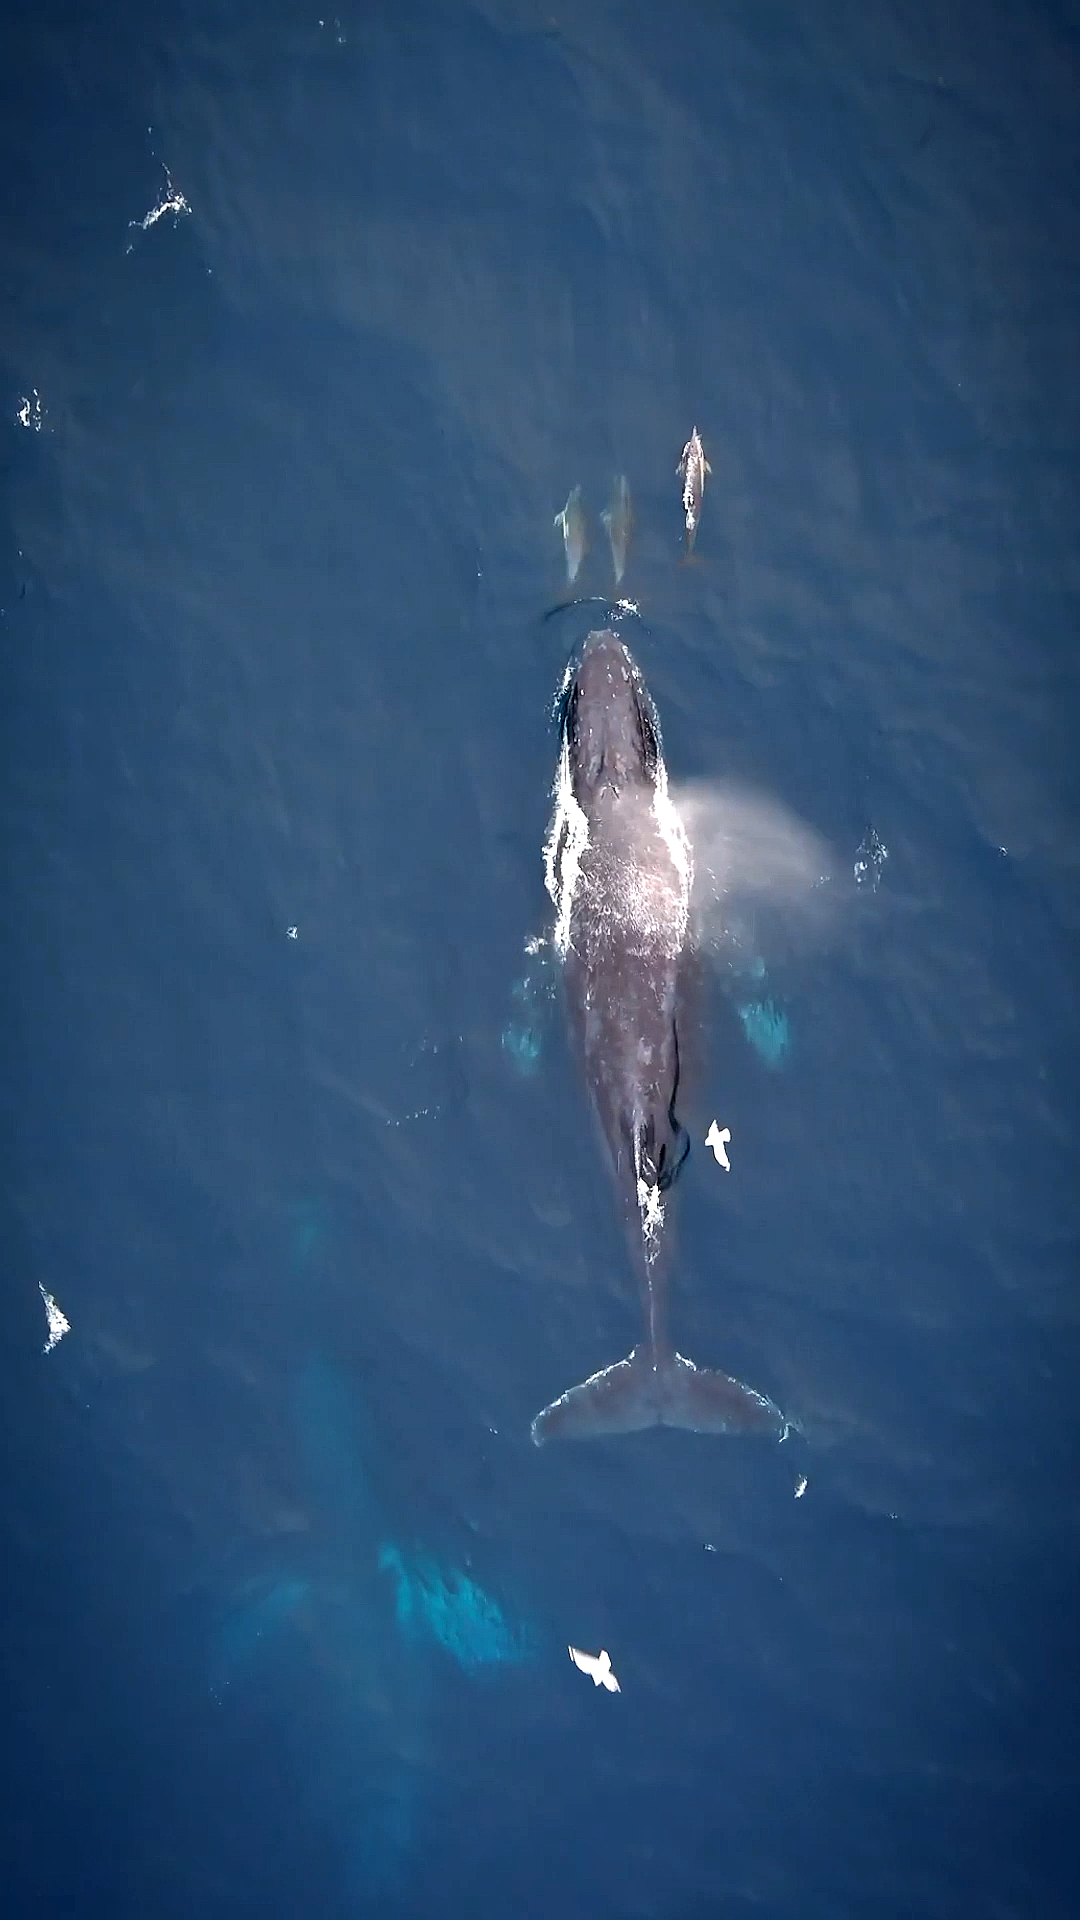 海洋馆海洋座头鲸与海豚嬉戏时光